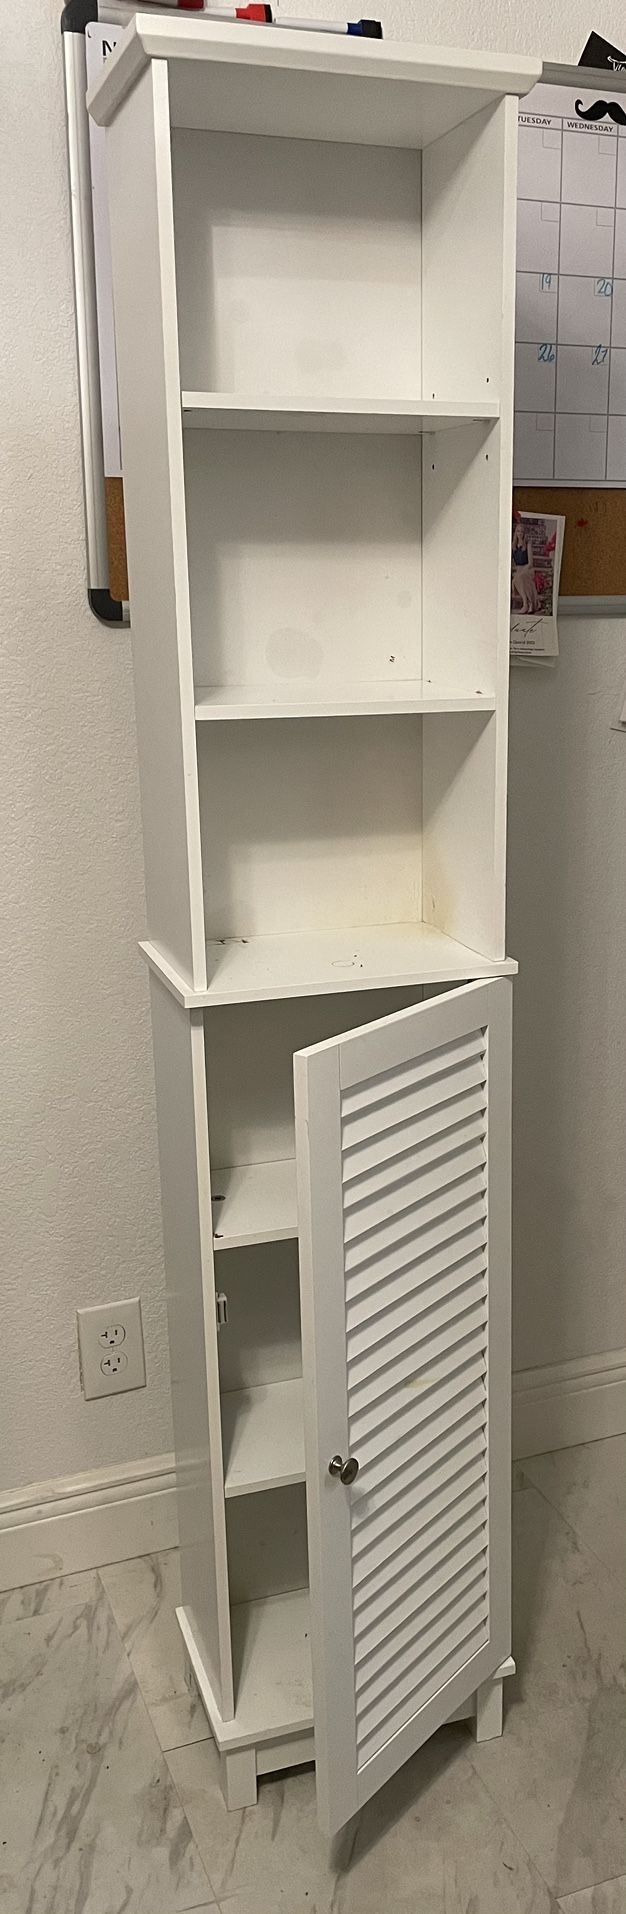 Storage Cabinet With 3 Open Shelves & Single Door